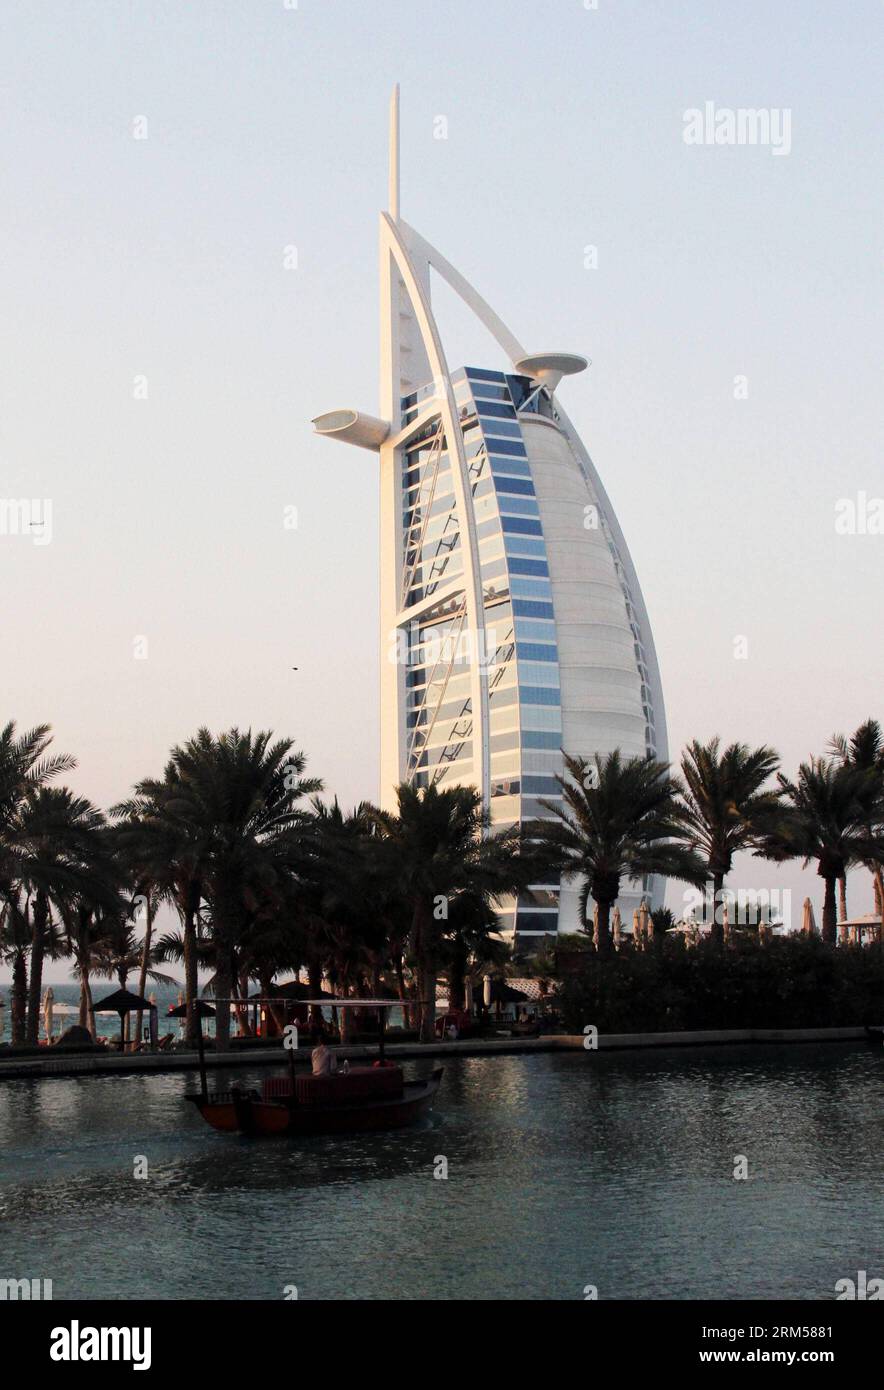 Bildnummer: 60595393 Datum: 30.09.2013 Copyright: imago/Xinhua foto scattata il 30 settembre 2013 mostra l'hotel Burj al-Arab, letteralmente torre araba, a Dubai, negli Emirati Arabi Uniti. I lettori della rivista di viaggi Ultratravel, pubblicata dal Daily Telegraph, hanno votato per l'hotel a sette stelle Burj al-Arab come il miglior resort di lusso al mondo, ha detto il quotidiano britannico sabato. (Xinhua/li Zhen)(axy) UAE-DUBAI-HOTEL-BURJ AL-ARAB PUBLICATIONxNOTxINxCHN Gesellschaft x2x xkg 2013 hoch o0 wirtschaft tourismus gebäude hotel luxus luxushotel 60595393 Data 30 09 2013 Copyright Imago Foto Stock